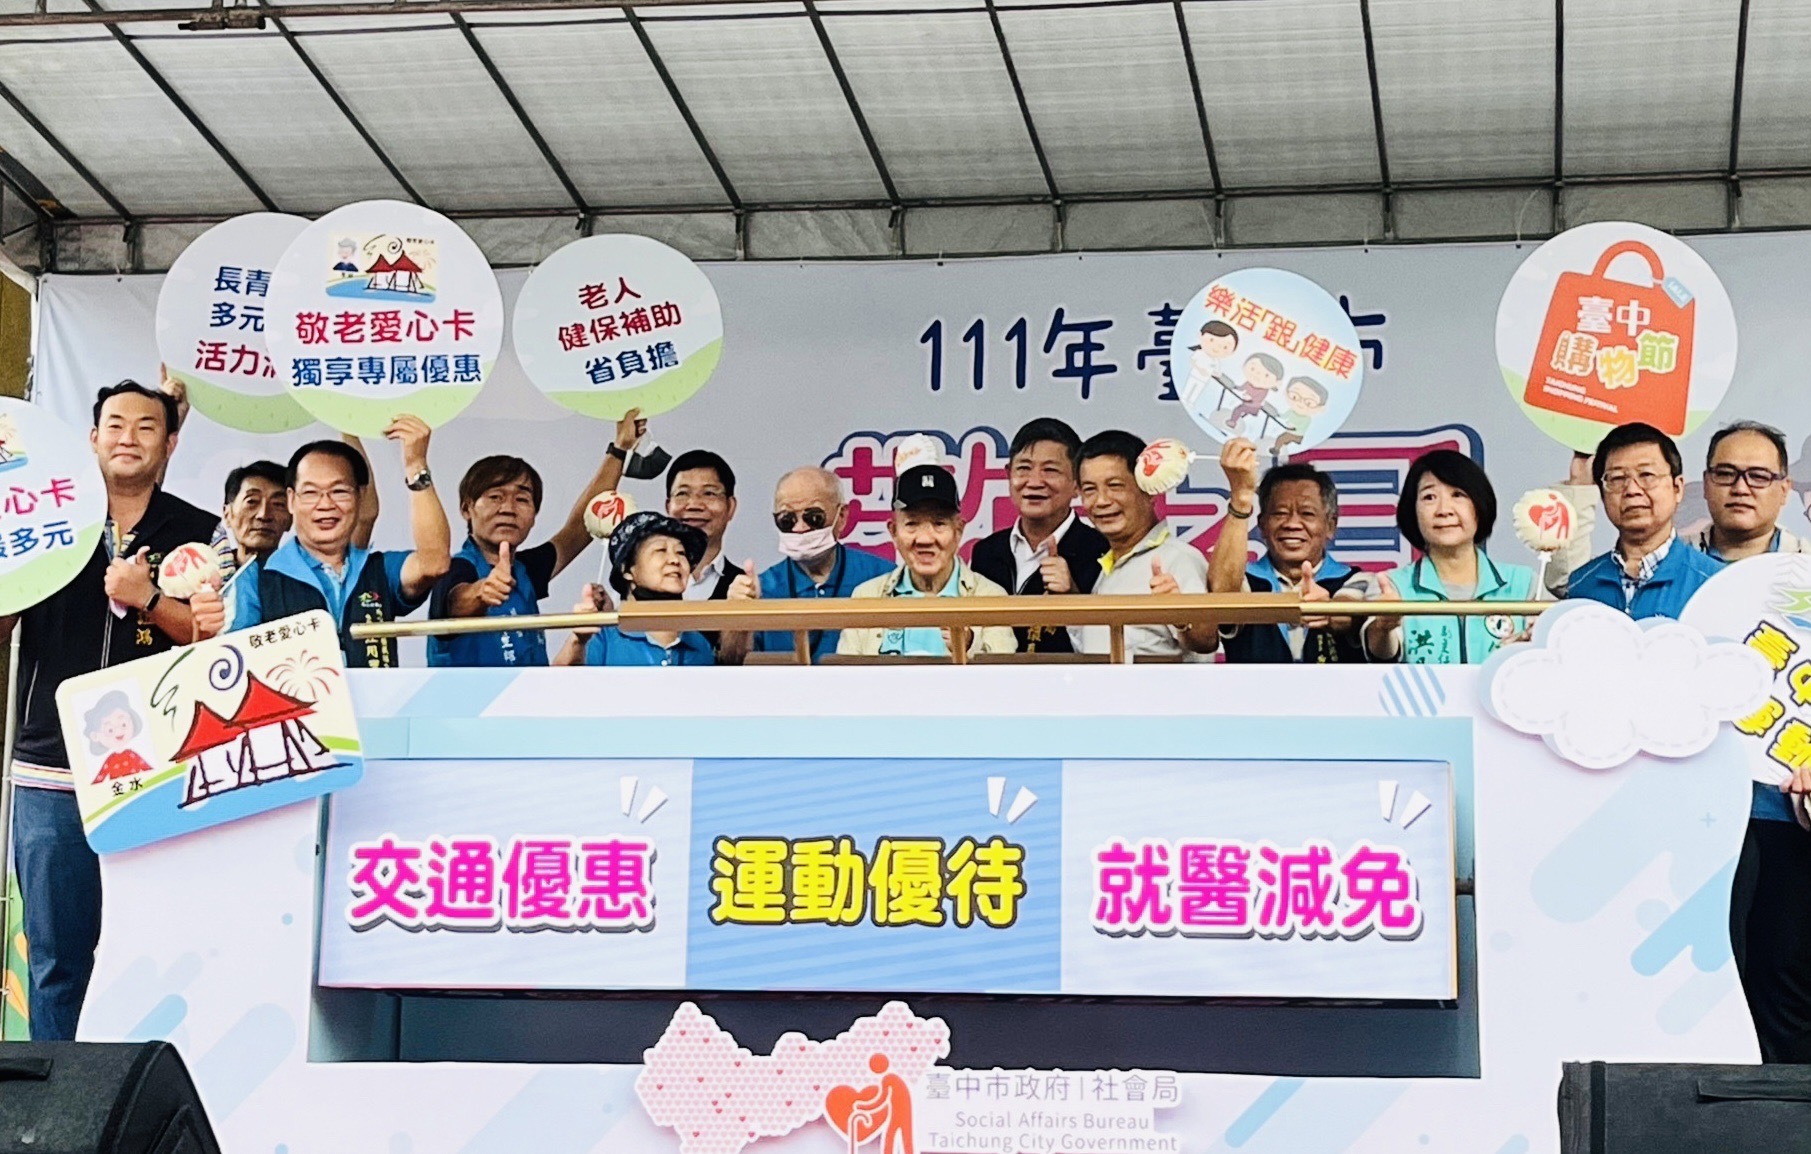 臺中市政府社會局今(16)日在南屯區豐樂雕塑公園舉辦敬老月活動記者會